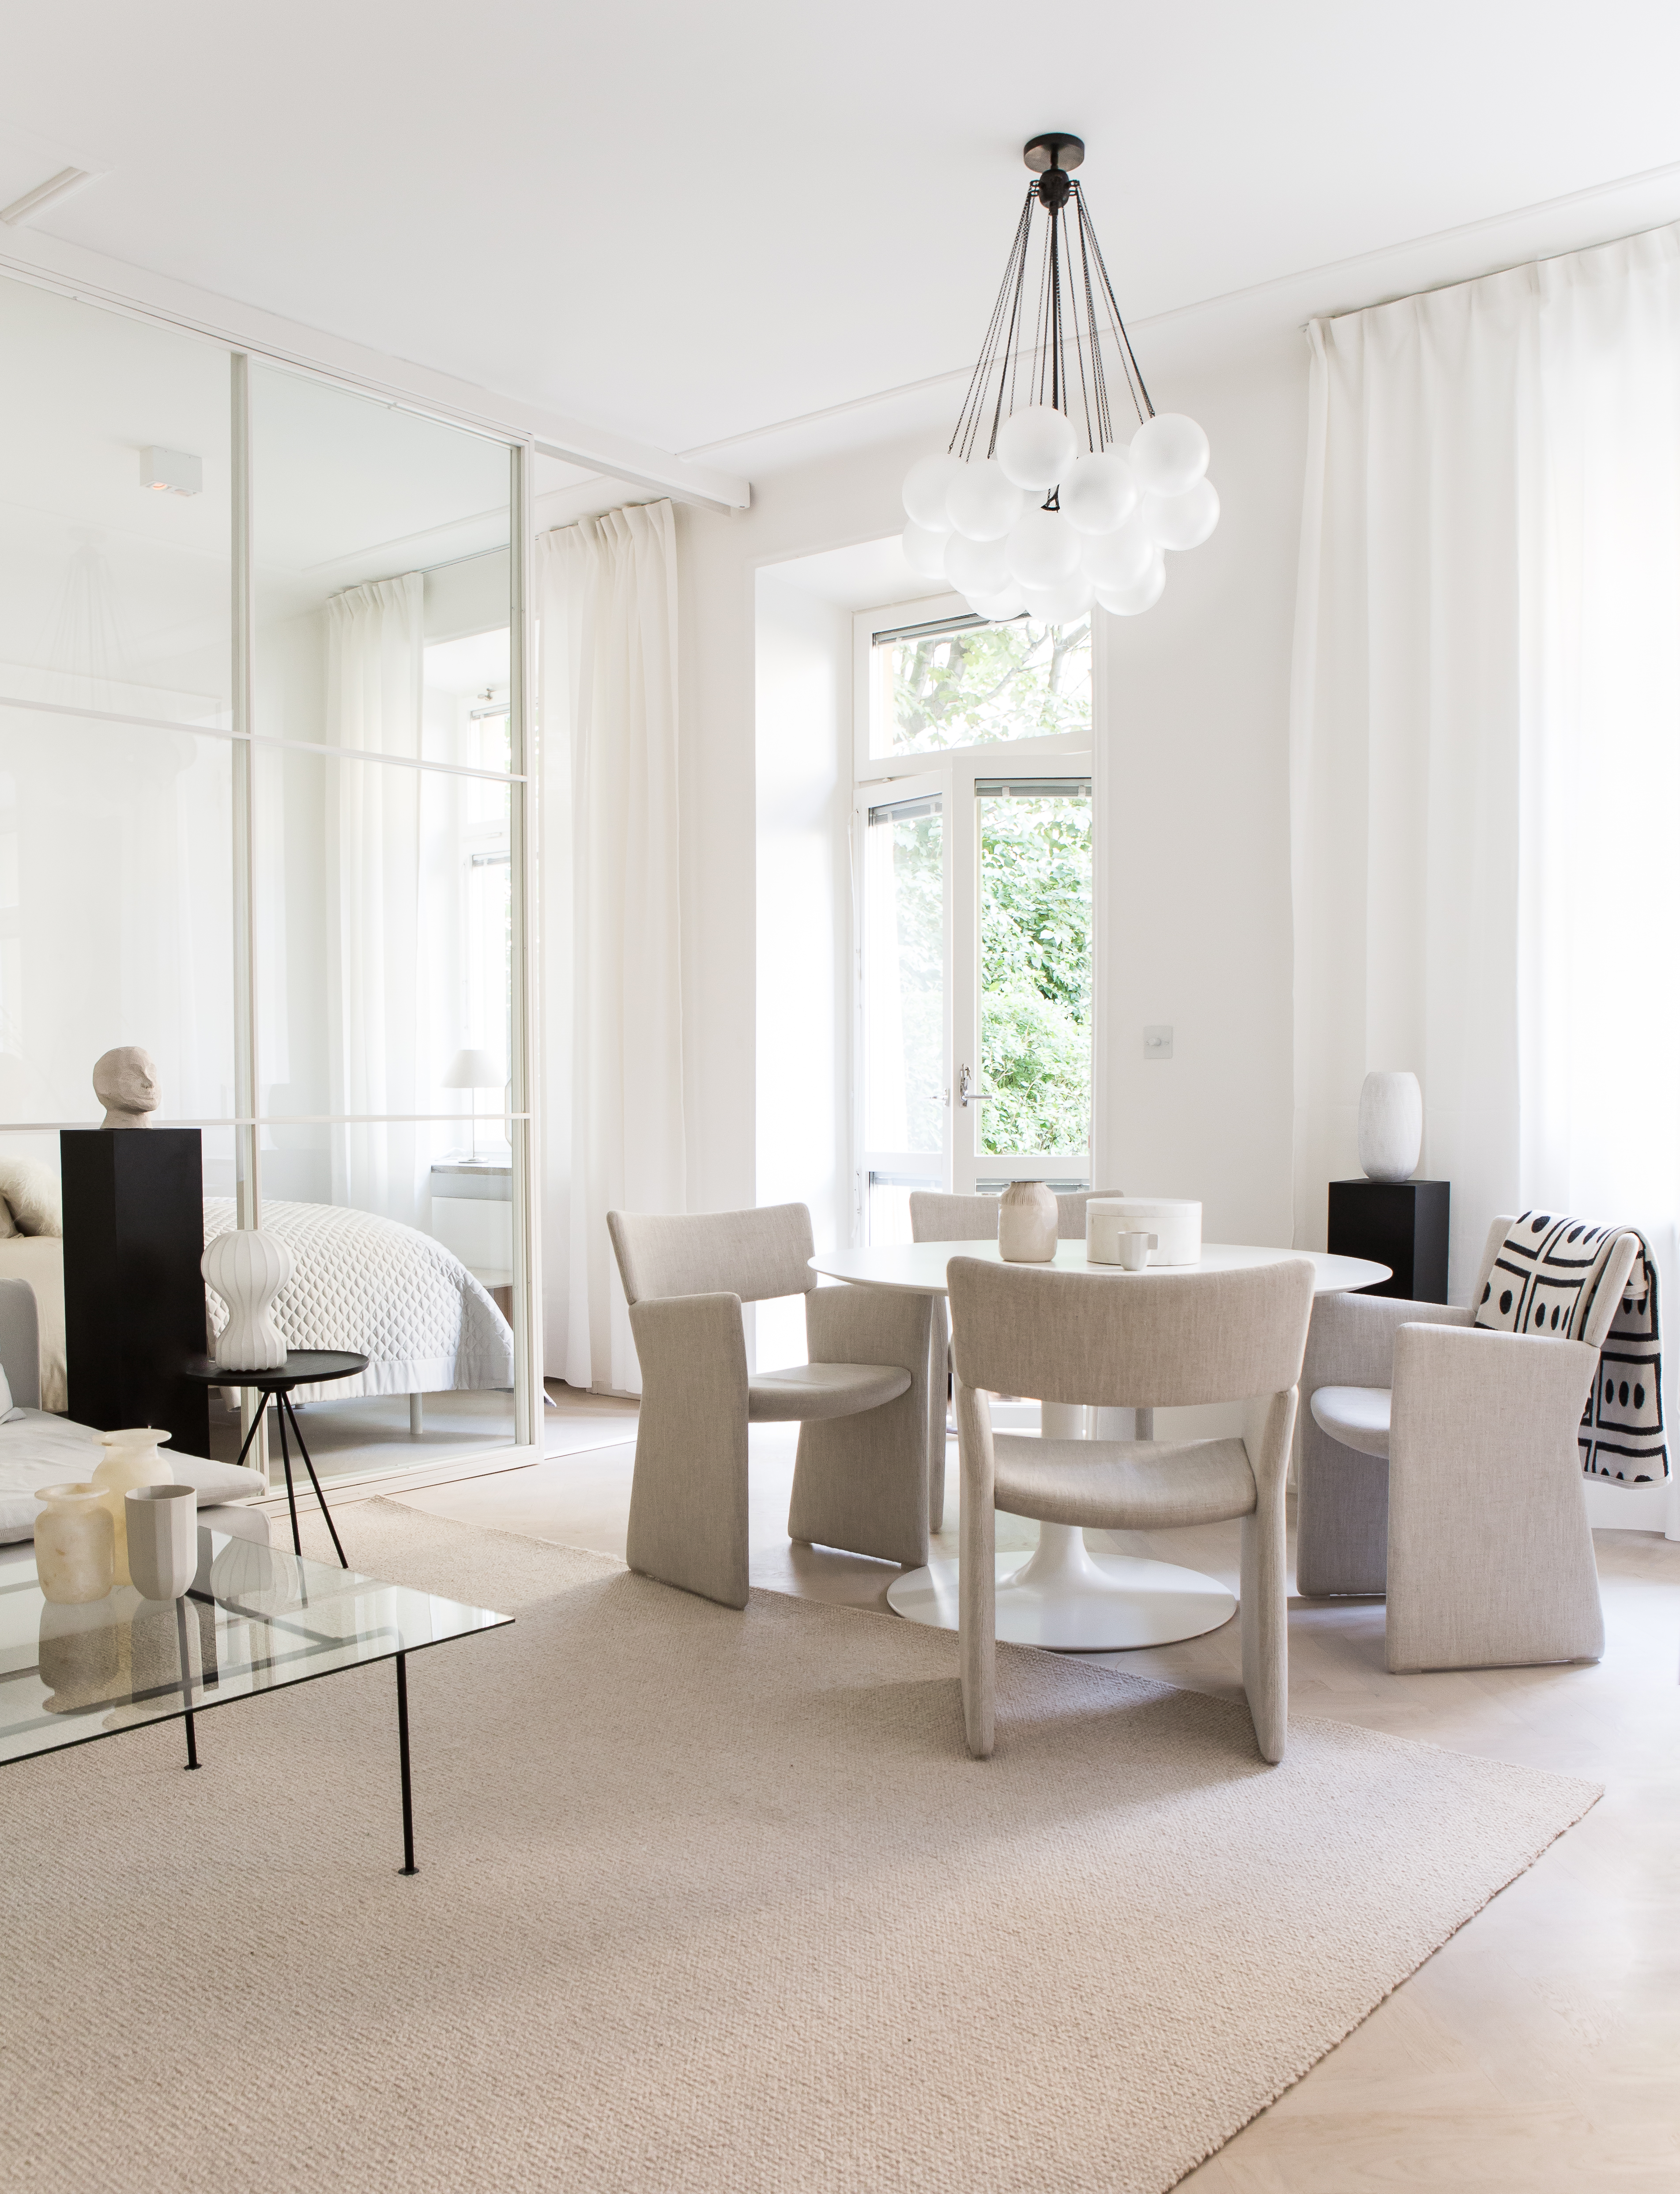 Lichte minimalistische slaapkamer uit Zweden